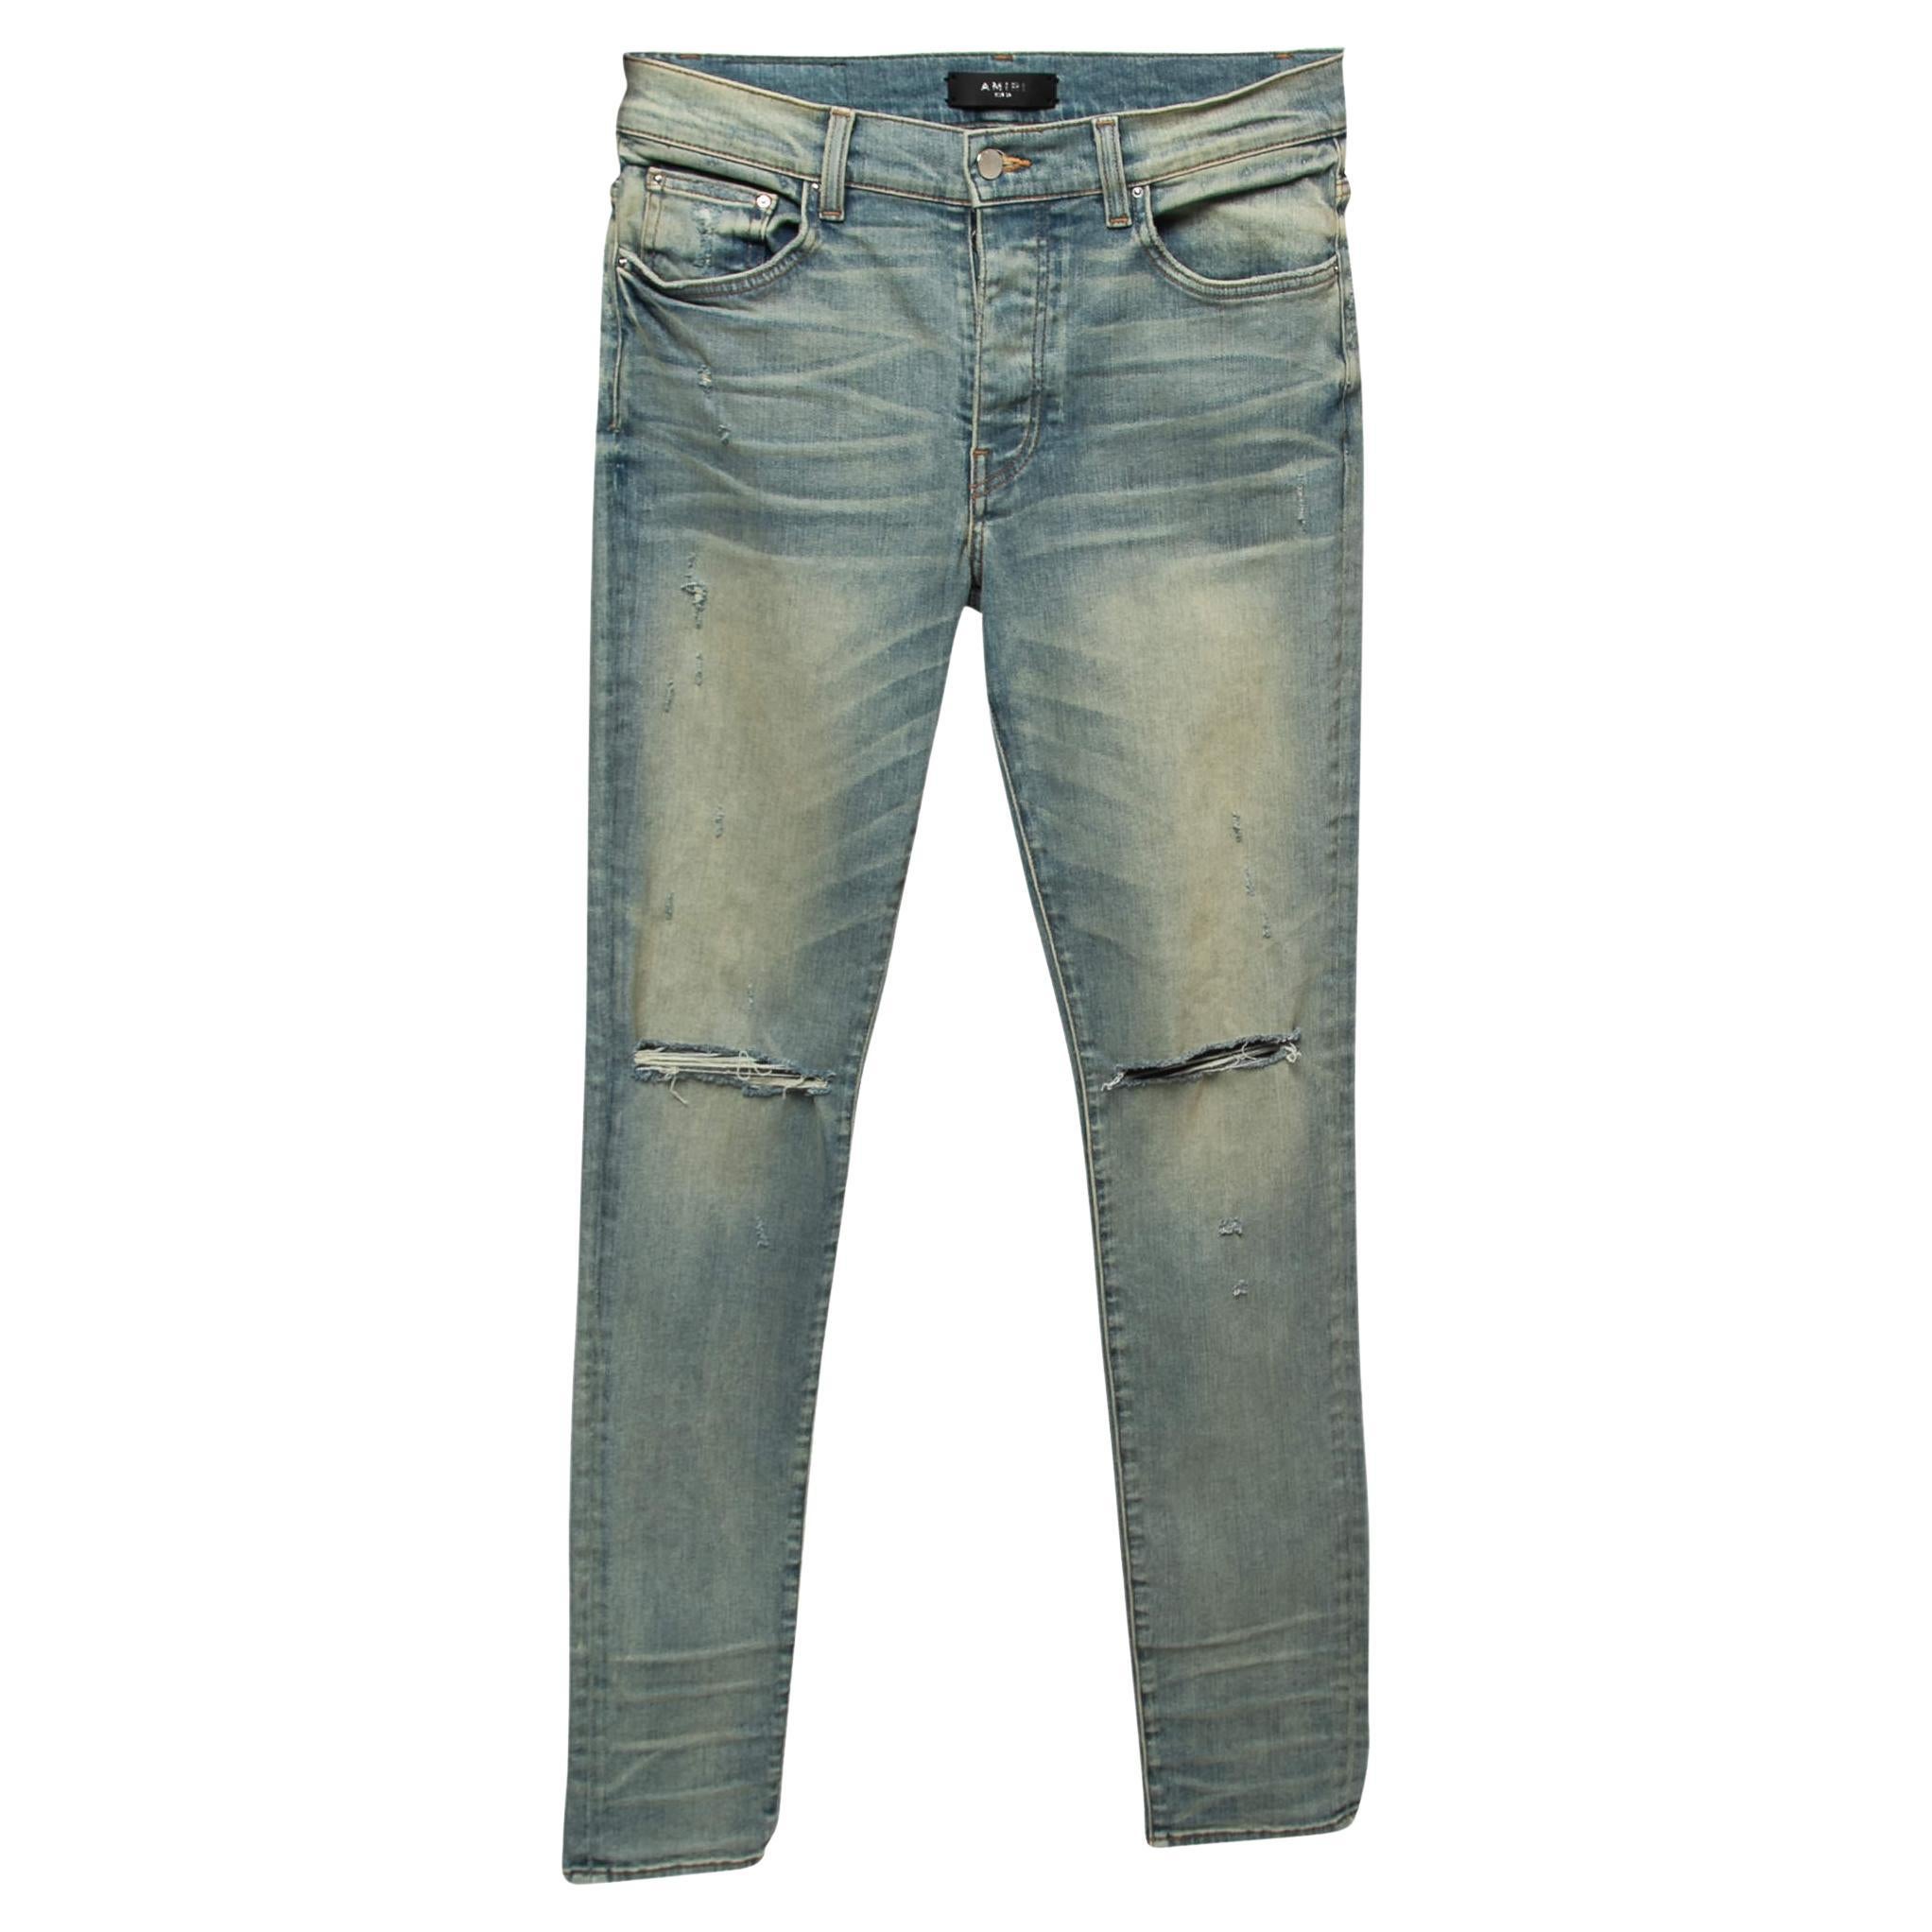 Amiri Blue Distressed Denim Skinny Jeans M Waist 32"